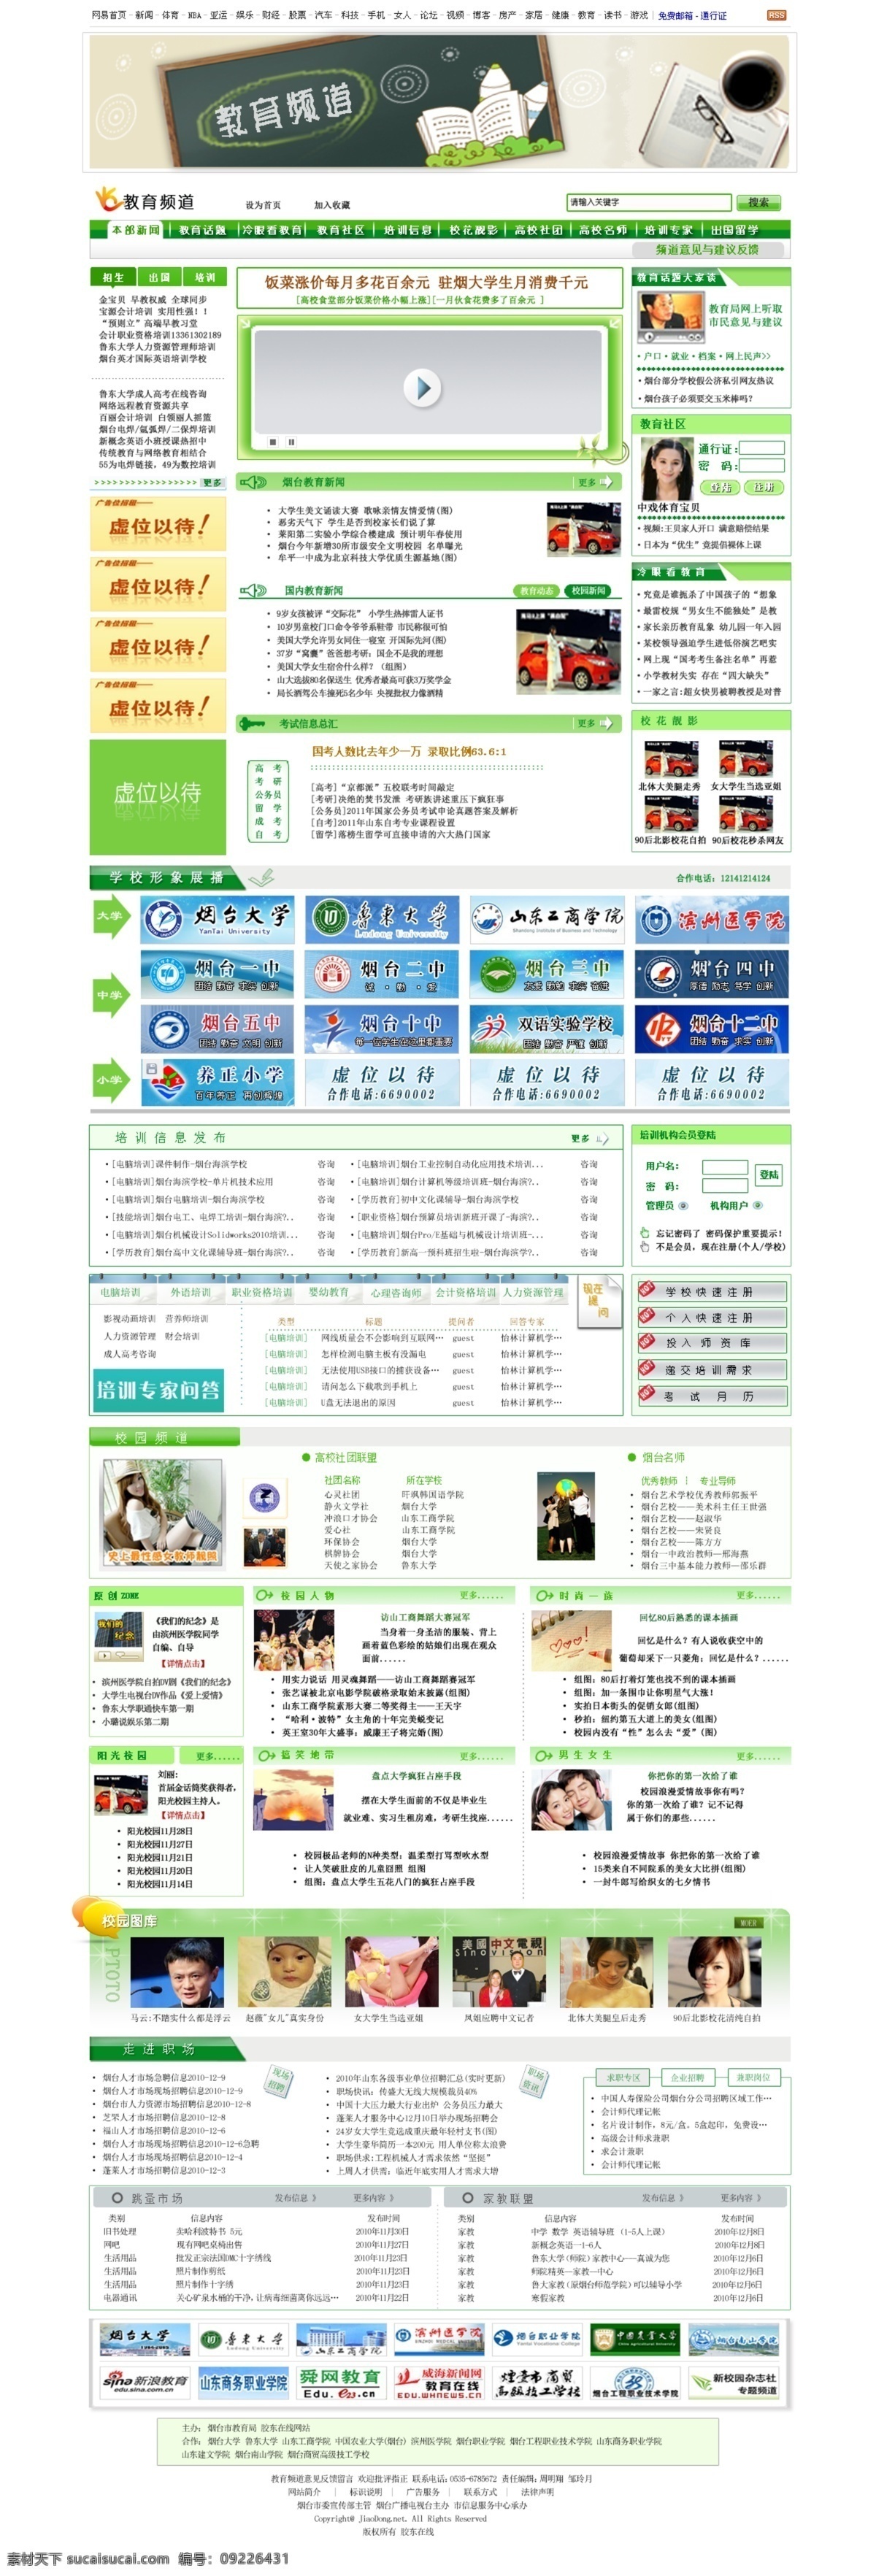 教育 网页模板 教育网页模板 卡通书本 绿色 频道 学习 源文件 中文模版 网页素材